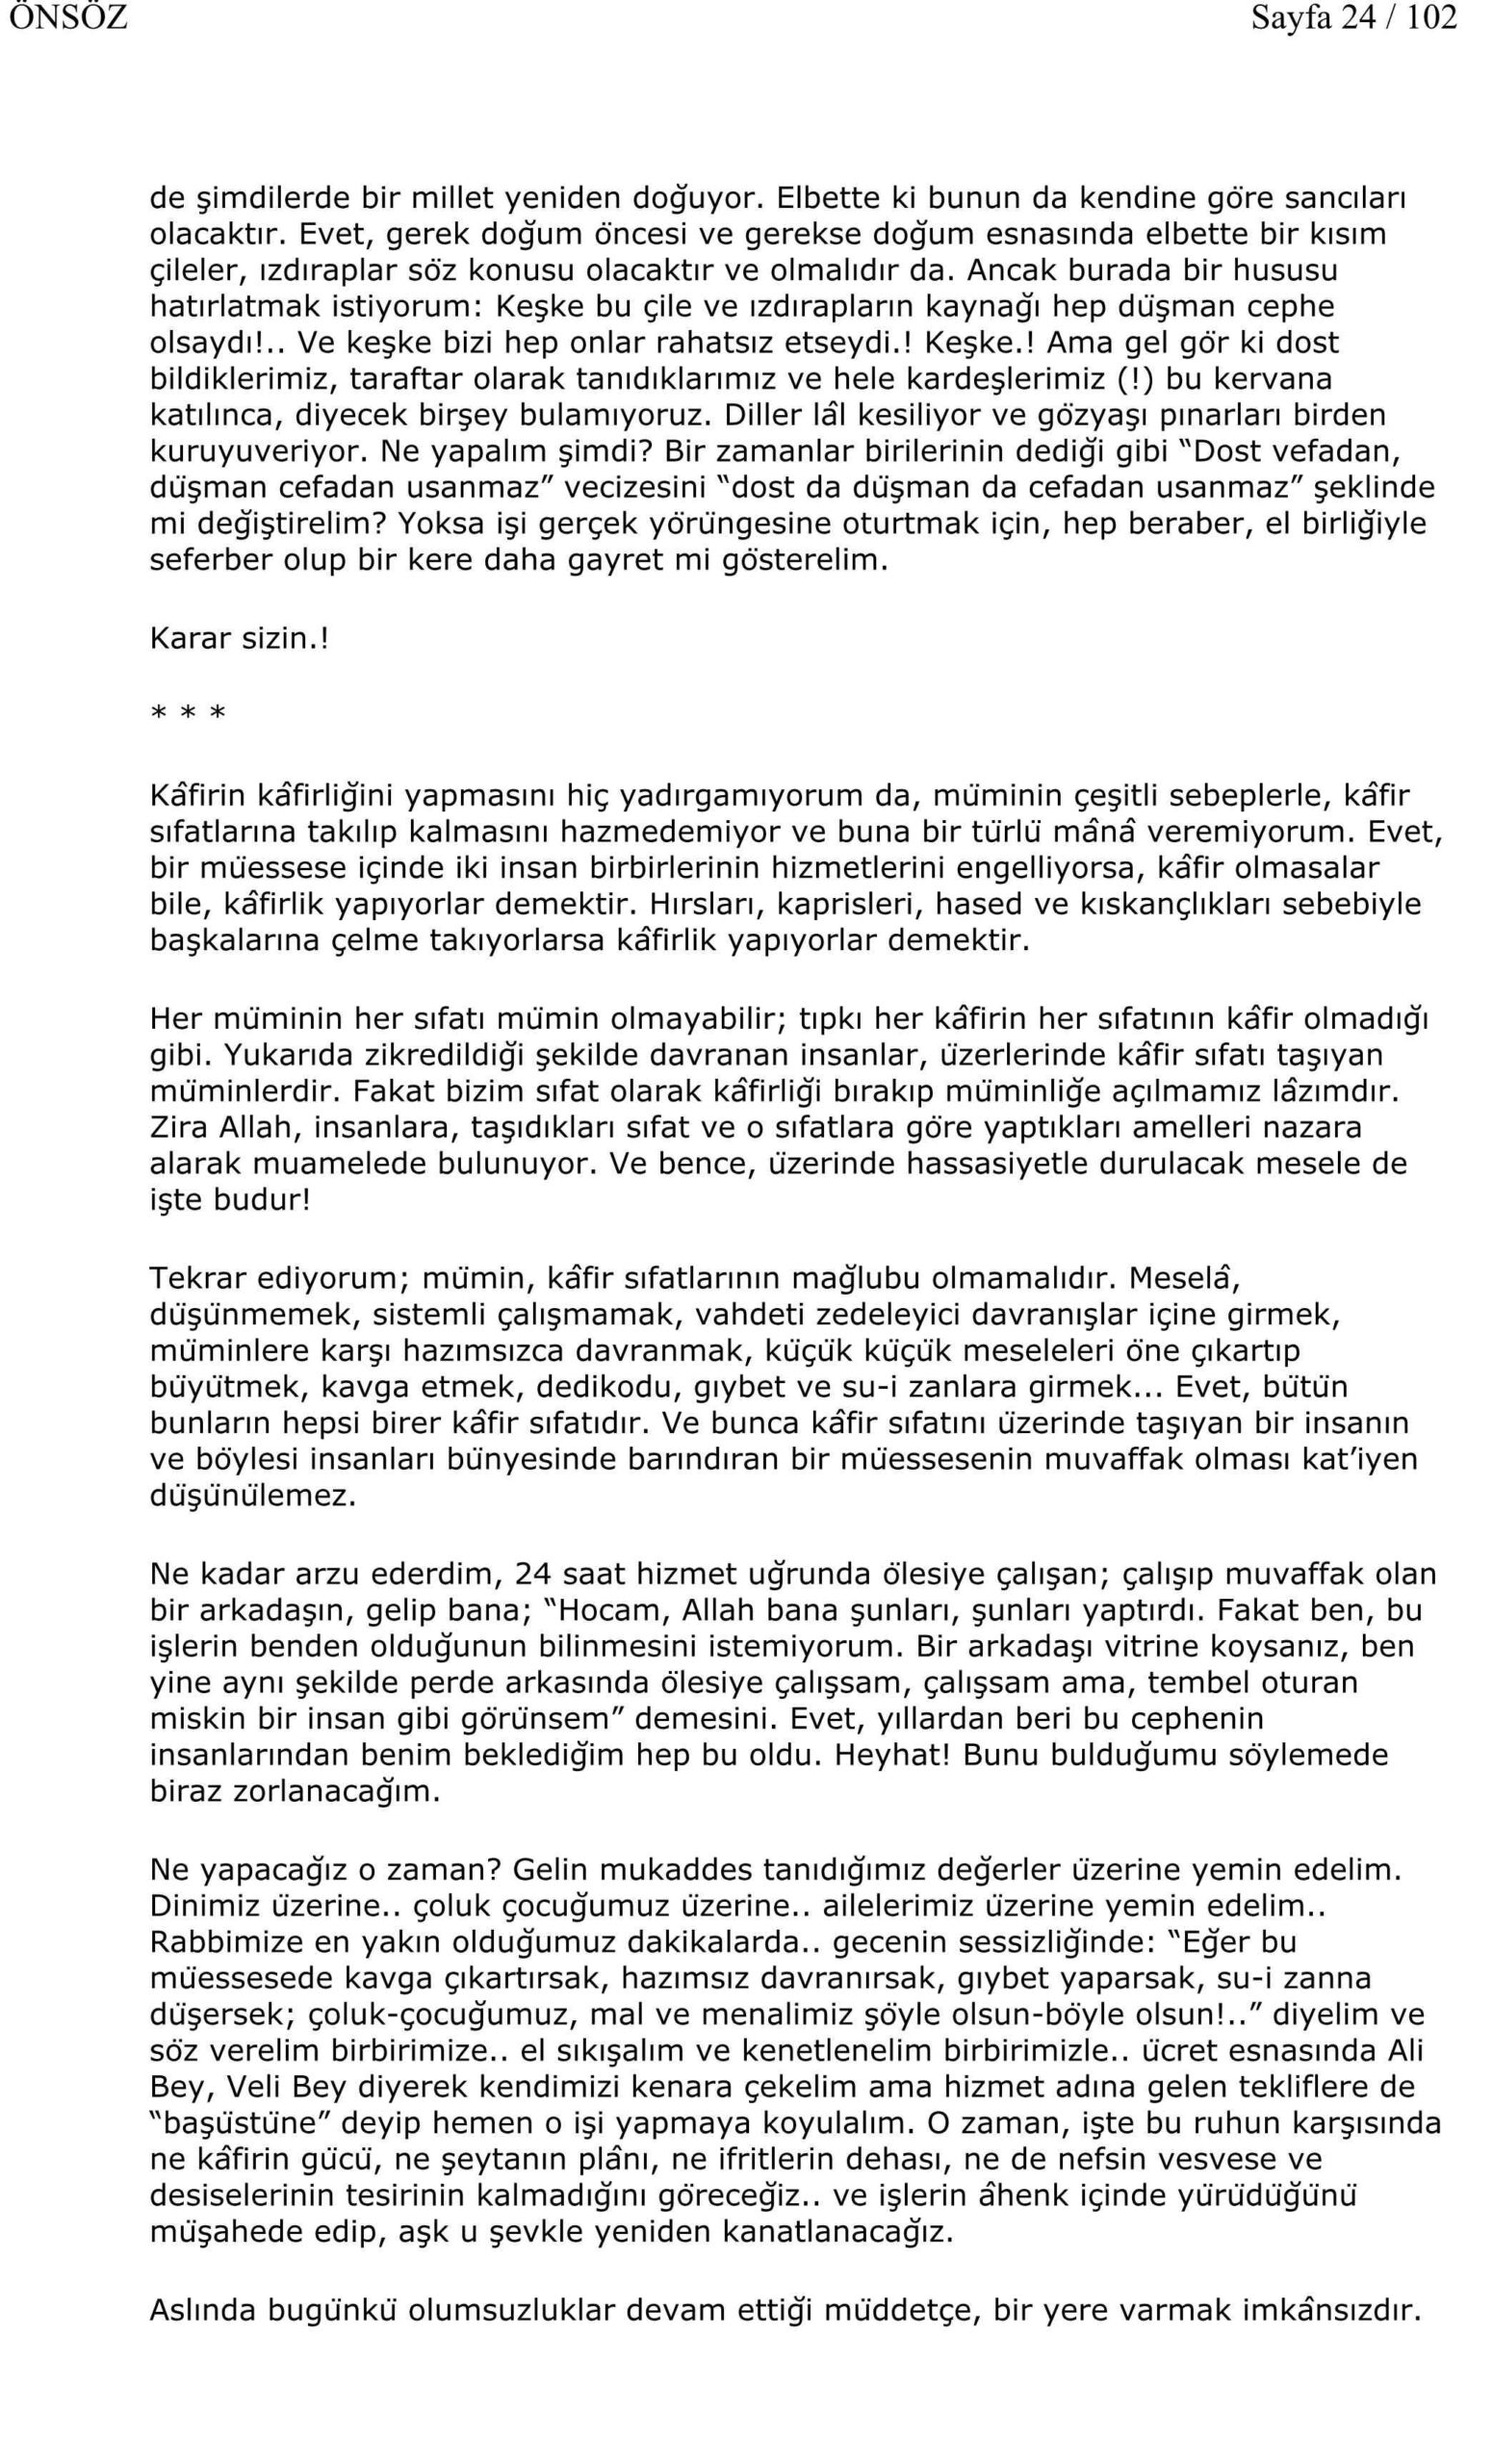 Fasildan Fasila - 3 - M F Gulen.pdf, 103-Sayfa 